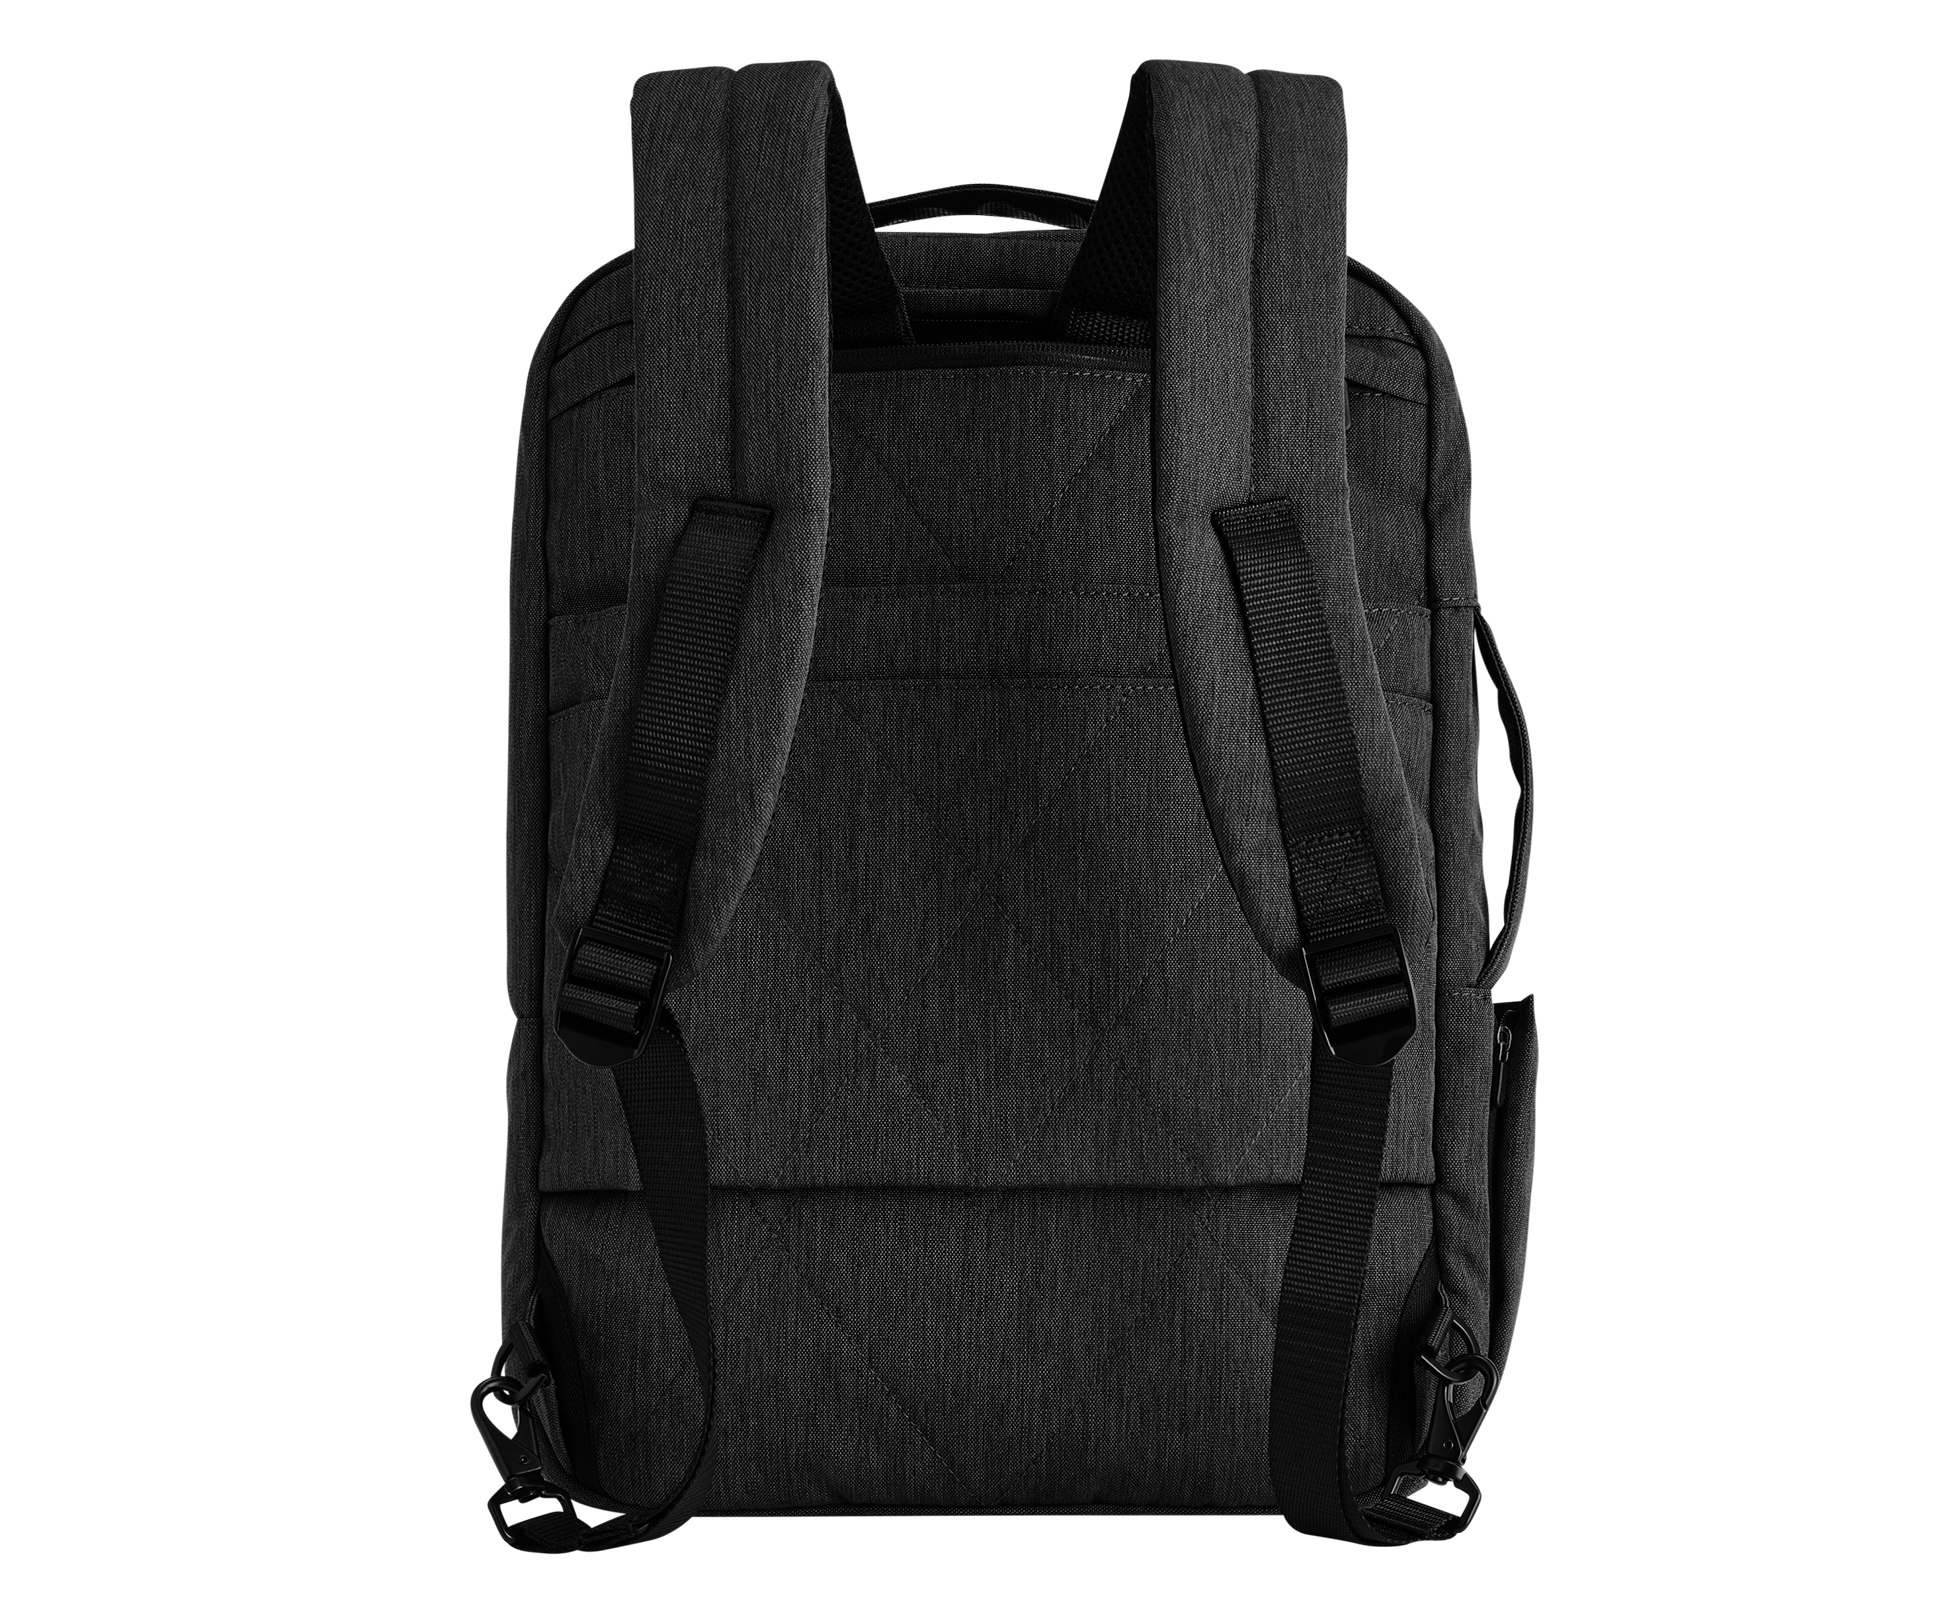 Skybags Backpack - Men - 1759105019